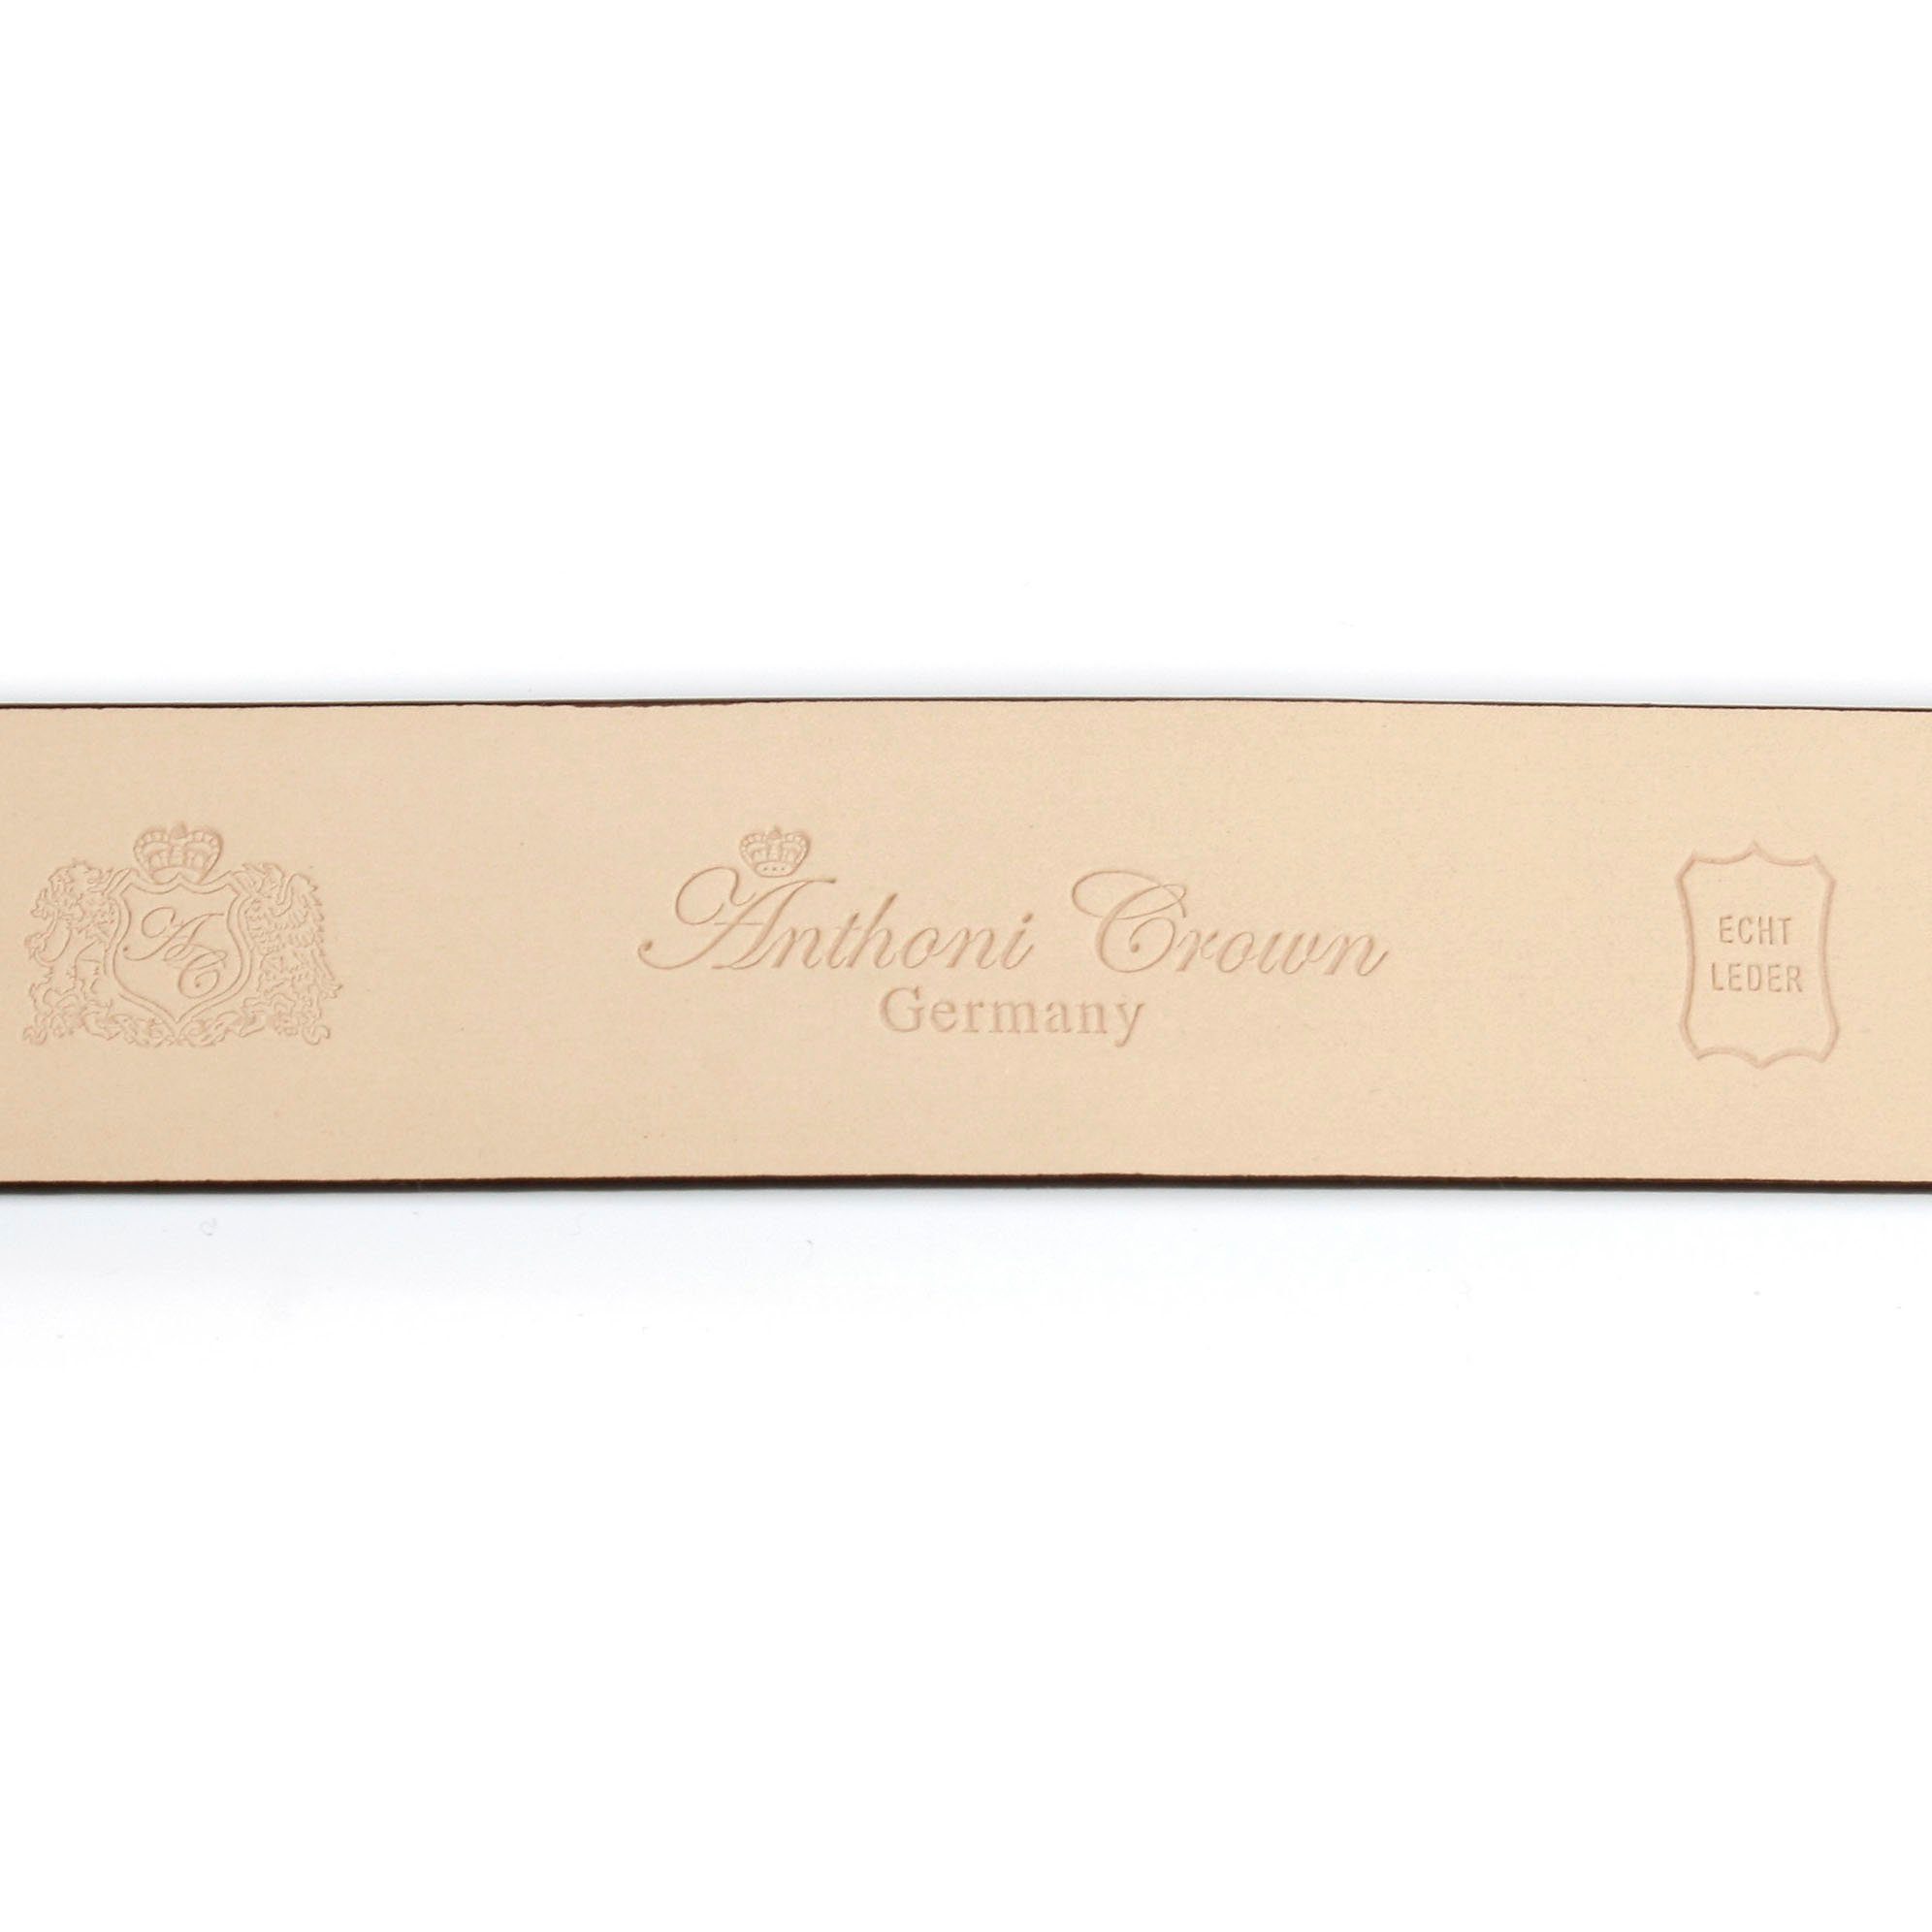 Crown filigraner grau Koppel-Schließe Ledergürtel goldfarbener mit Anthoni